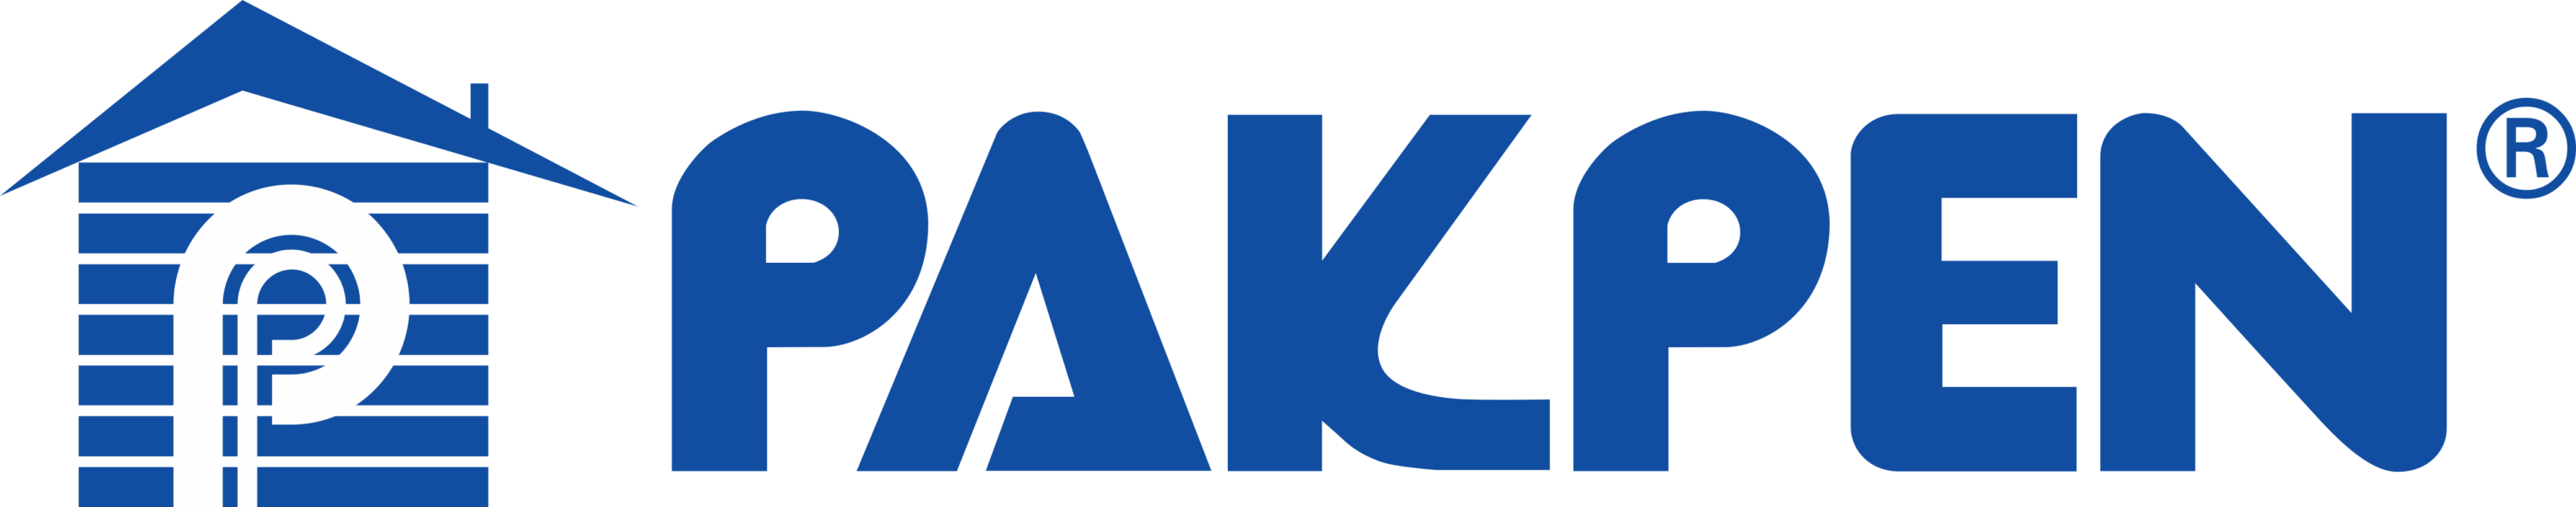 Pakpen Logo